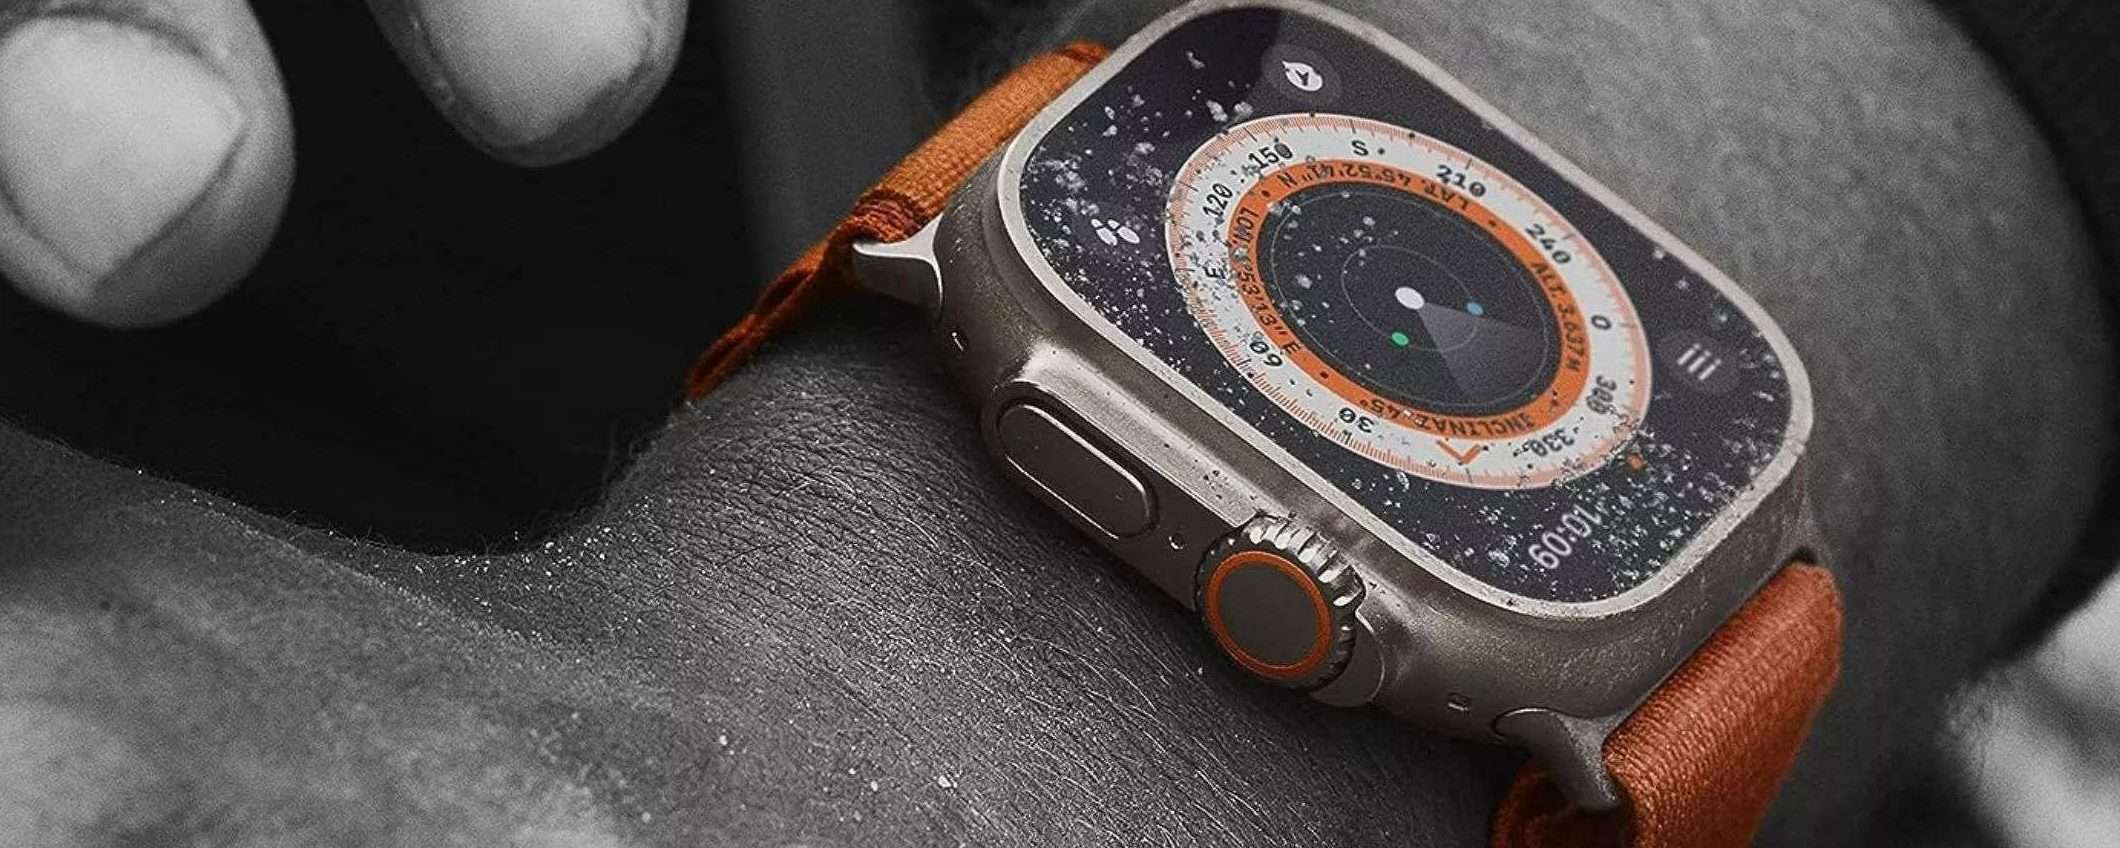 Apple Watch Ultra 2: il miglior smartwatch a soli 849€ su Amazon